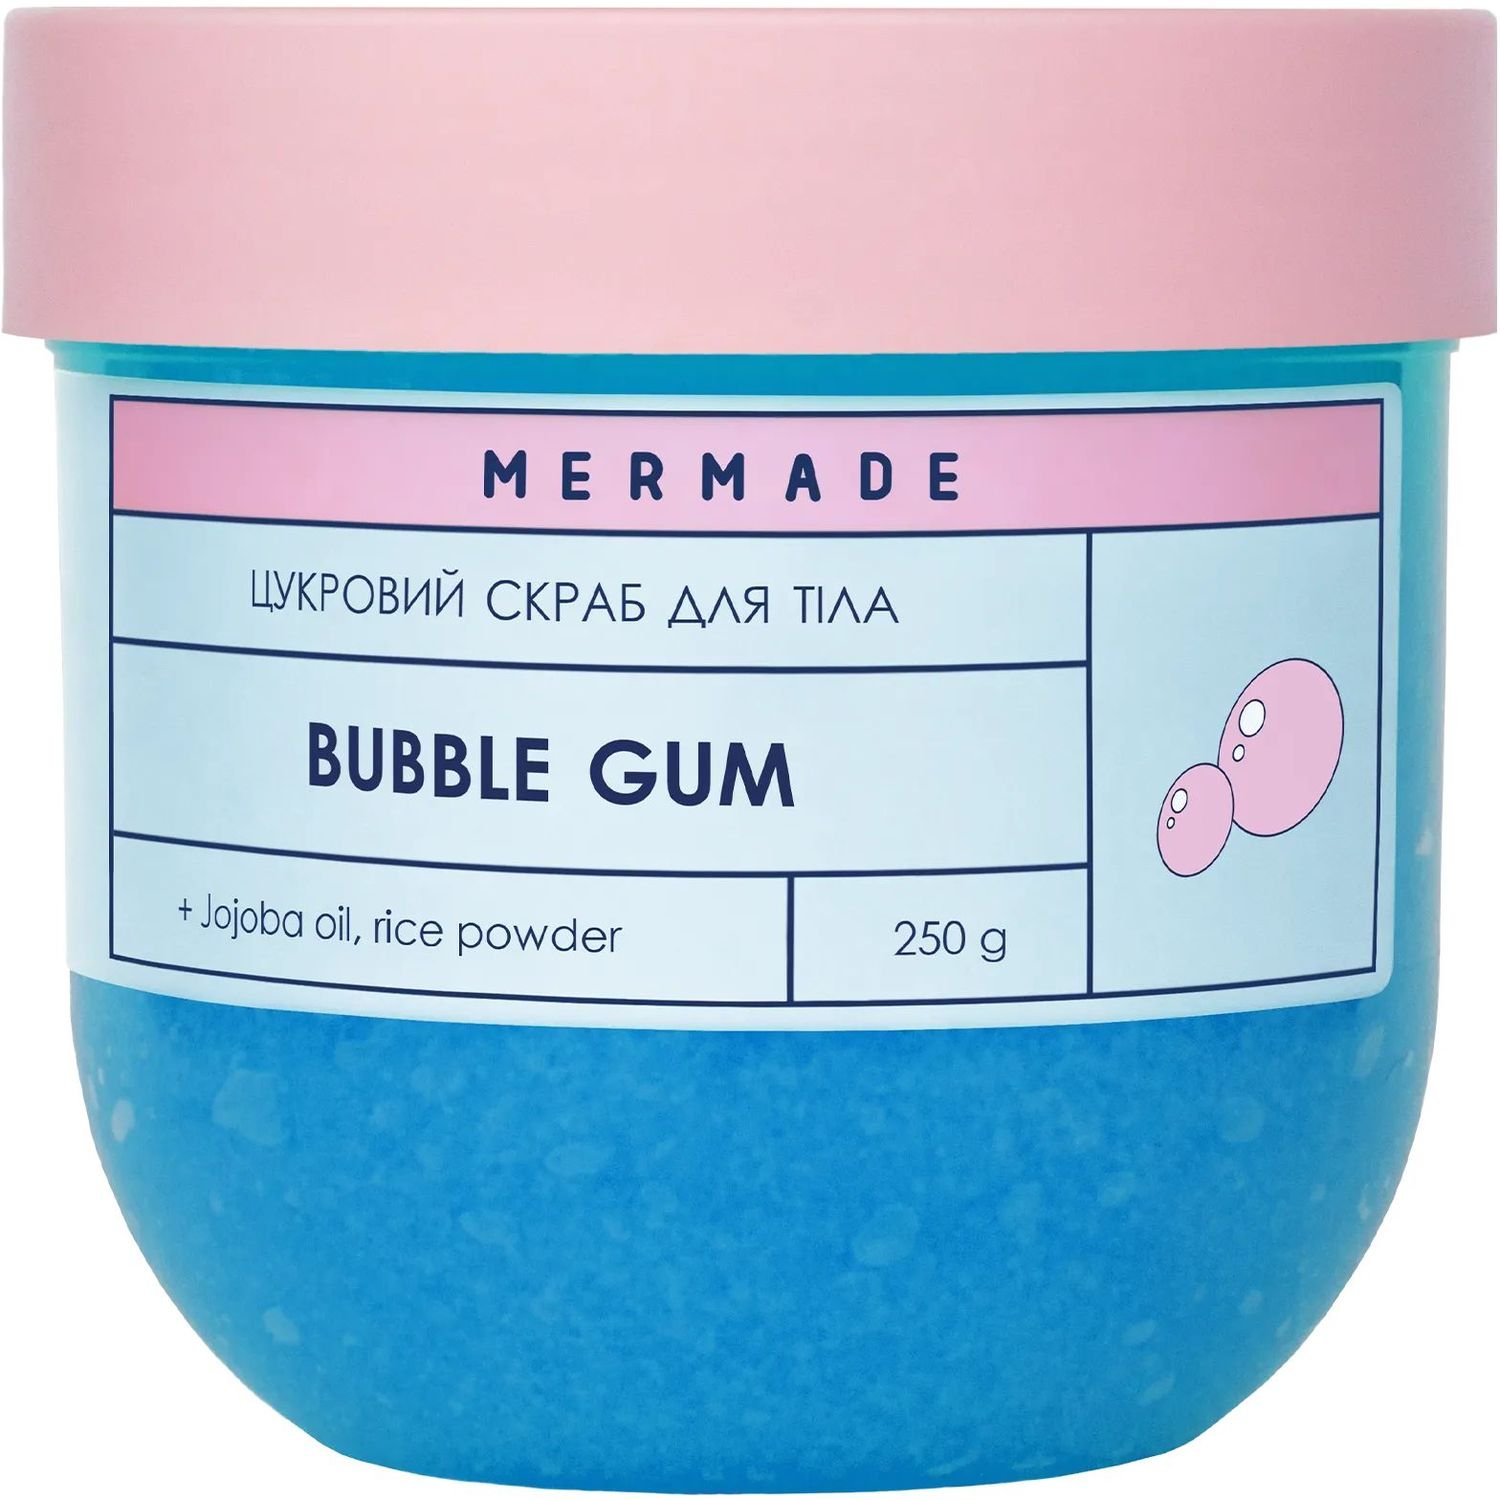 Сахарный скраб для тела Mermade Bubble Gum 250 г - фото 1